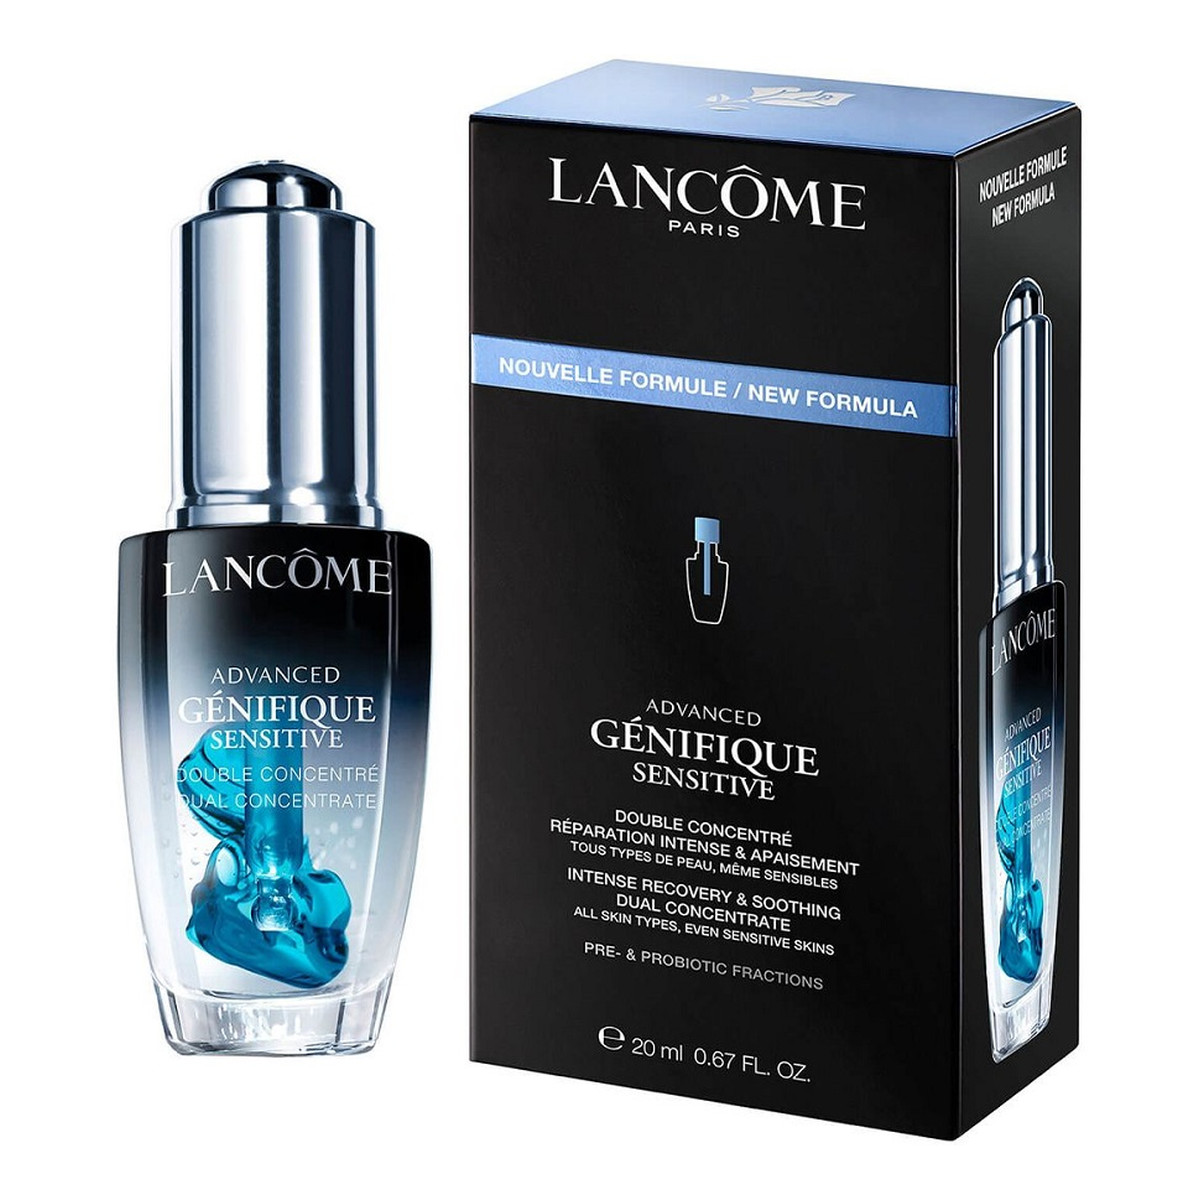 Lancome Advanced genifique sensitive nawilżająco-kojące serum do twarzy 20ml